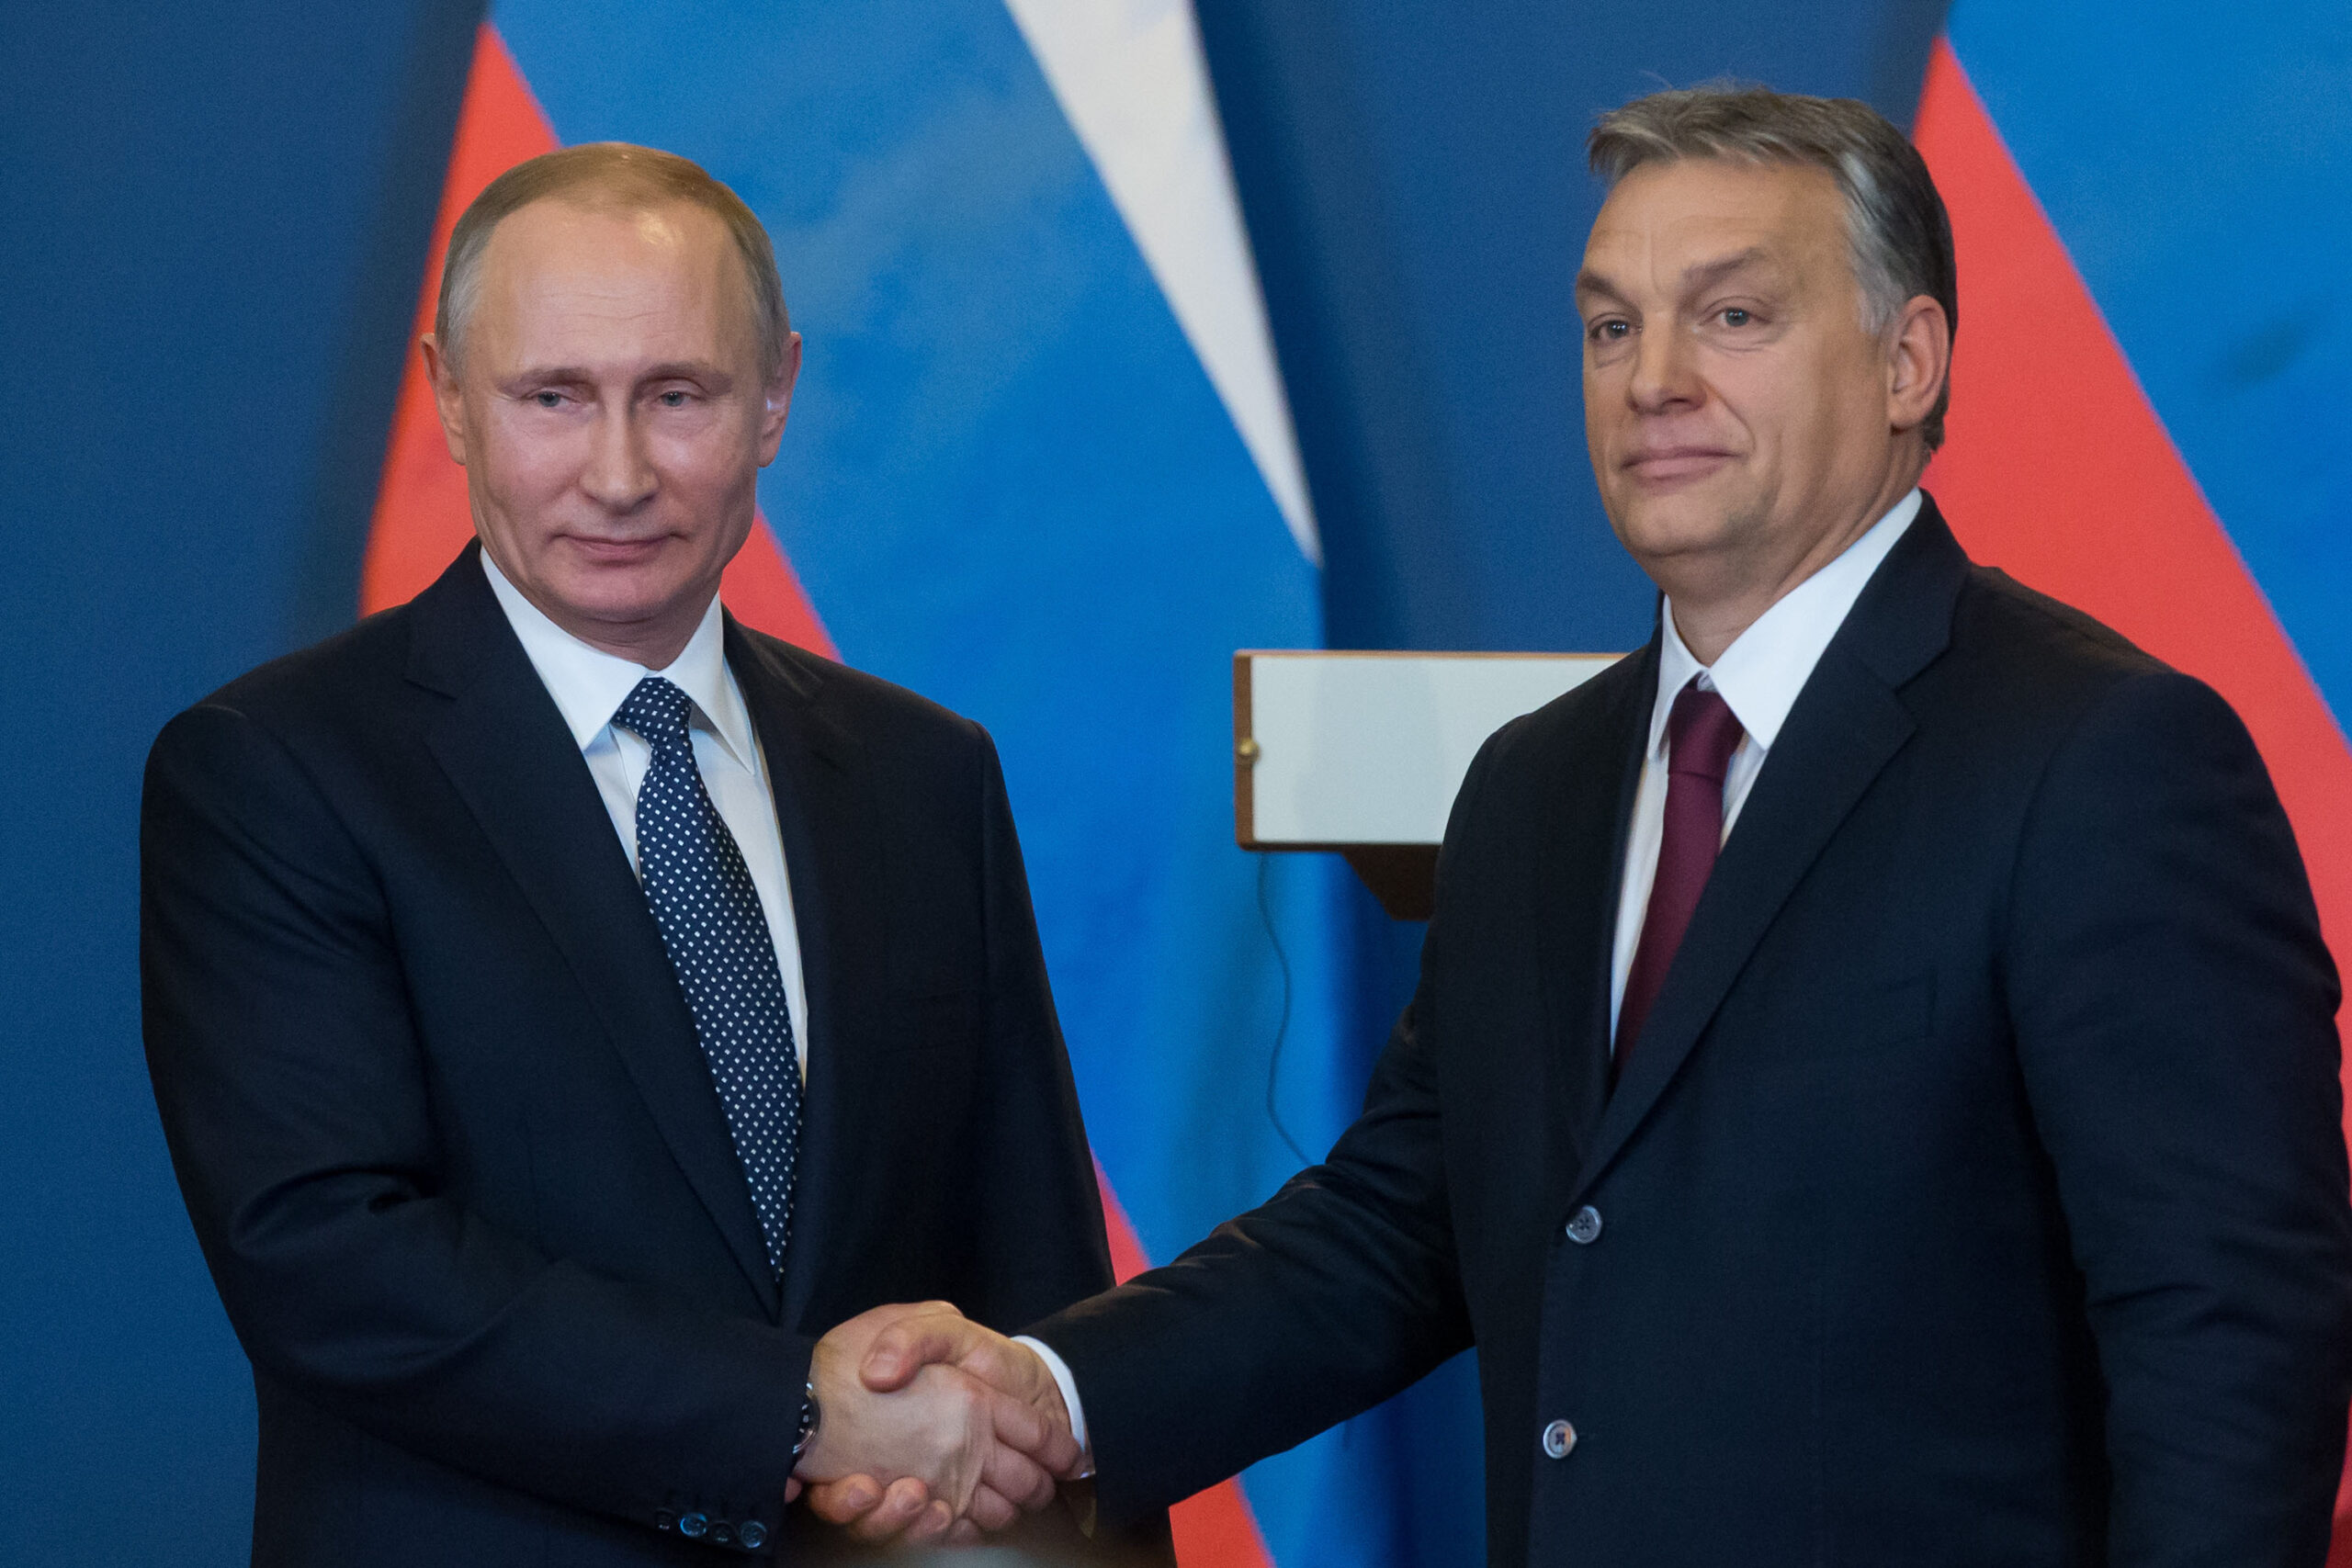 Orbán Putyin trójai falova, és csak az EU-s pénzeknek köszönheti hatalmát a bajor közmédia cikke szerint